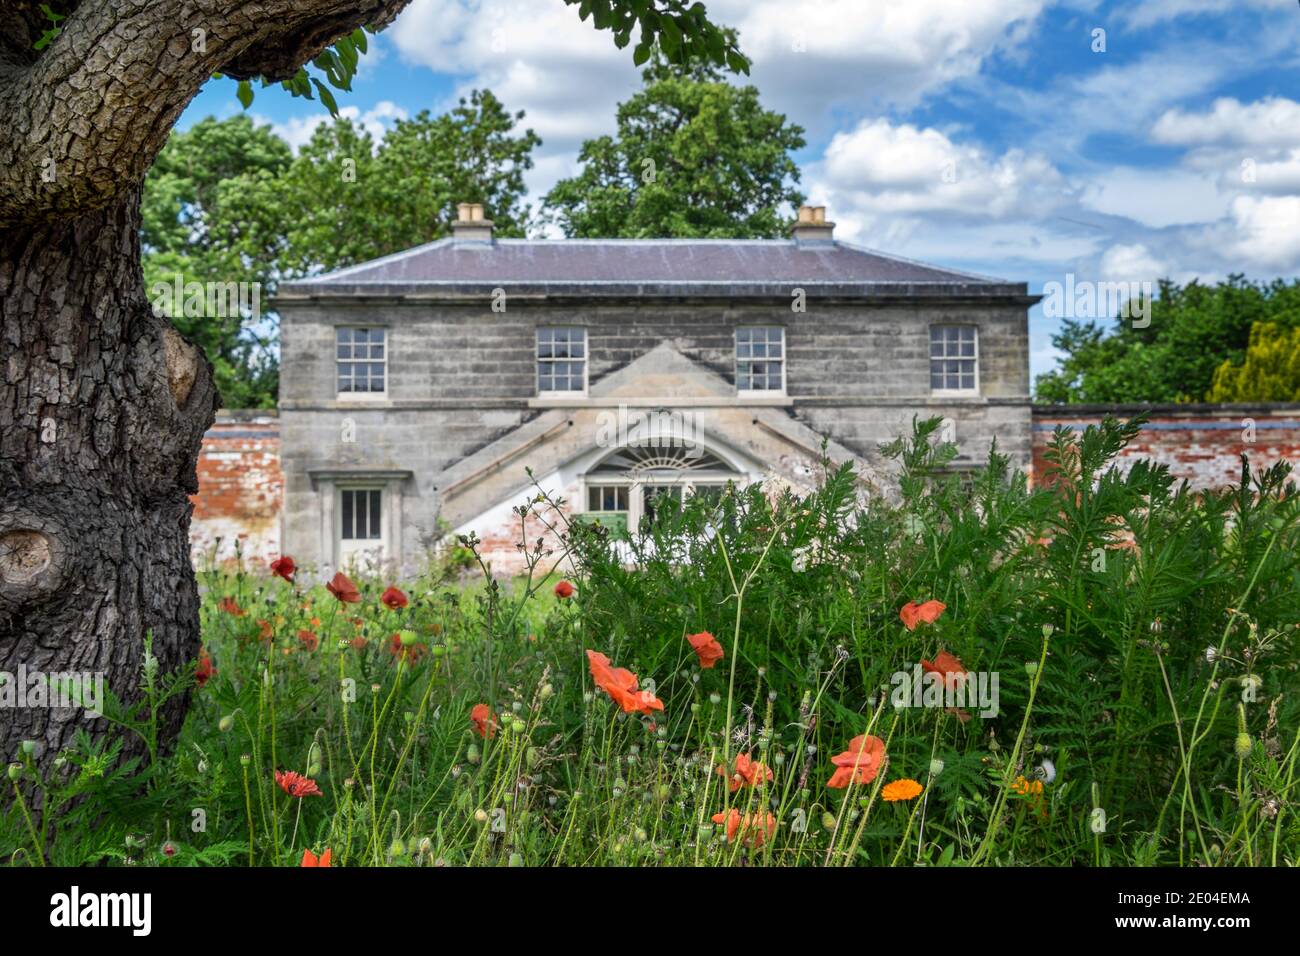 Le jardin clos et la maison du jardinier, situé dans le domaine de Shugborough Estate, près de Stafford, Staffordshire, Angleterre, Royaume-Uni Banque D'Images